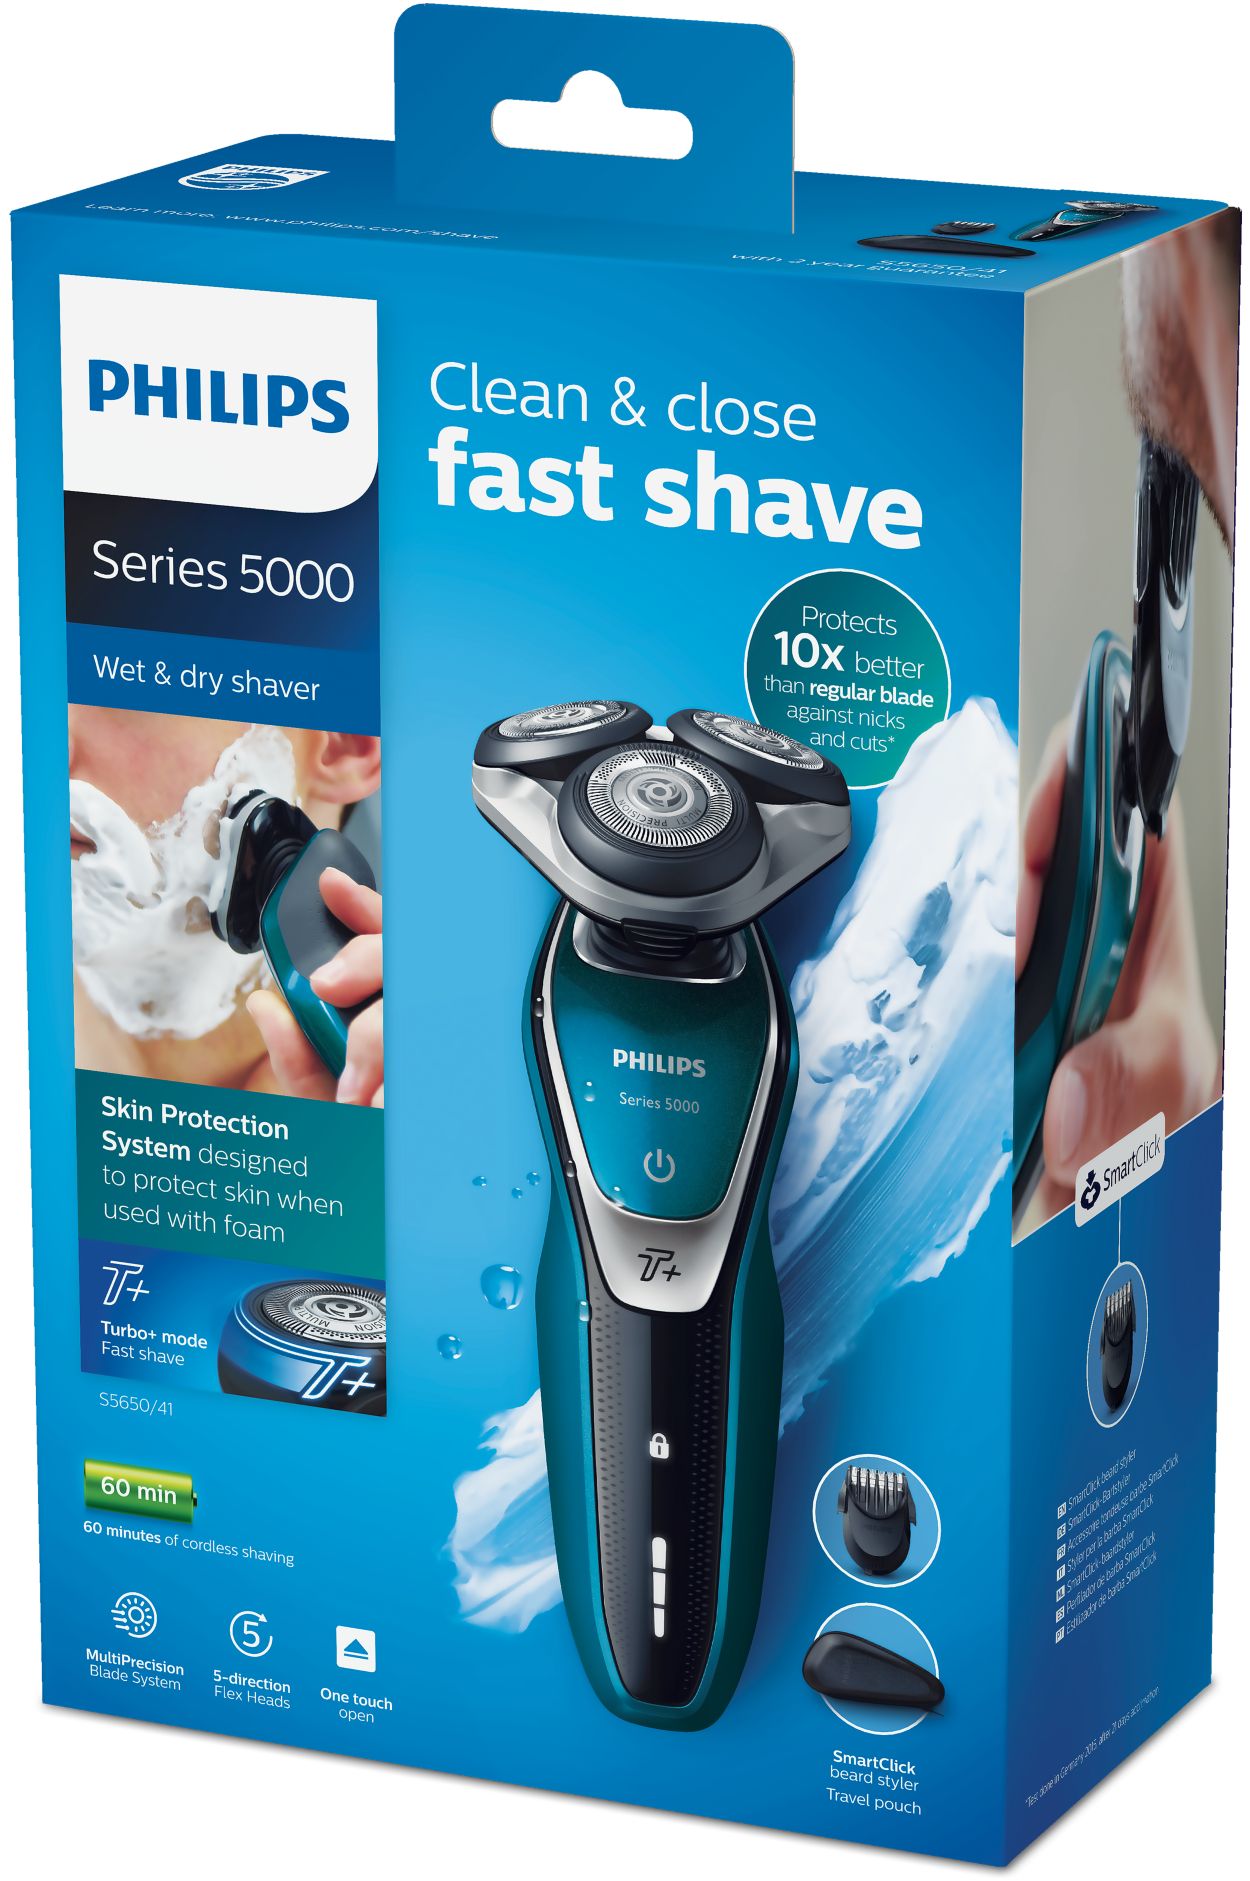 bijgeloof Compliment Trouwens Shaver series 5000 Elektrisch scheerapparaat voor nat en droog scheren  S5650/41 | Philips